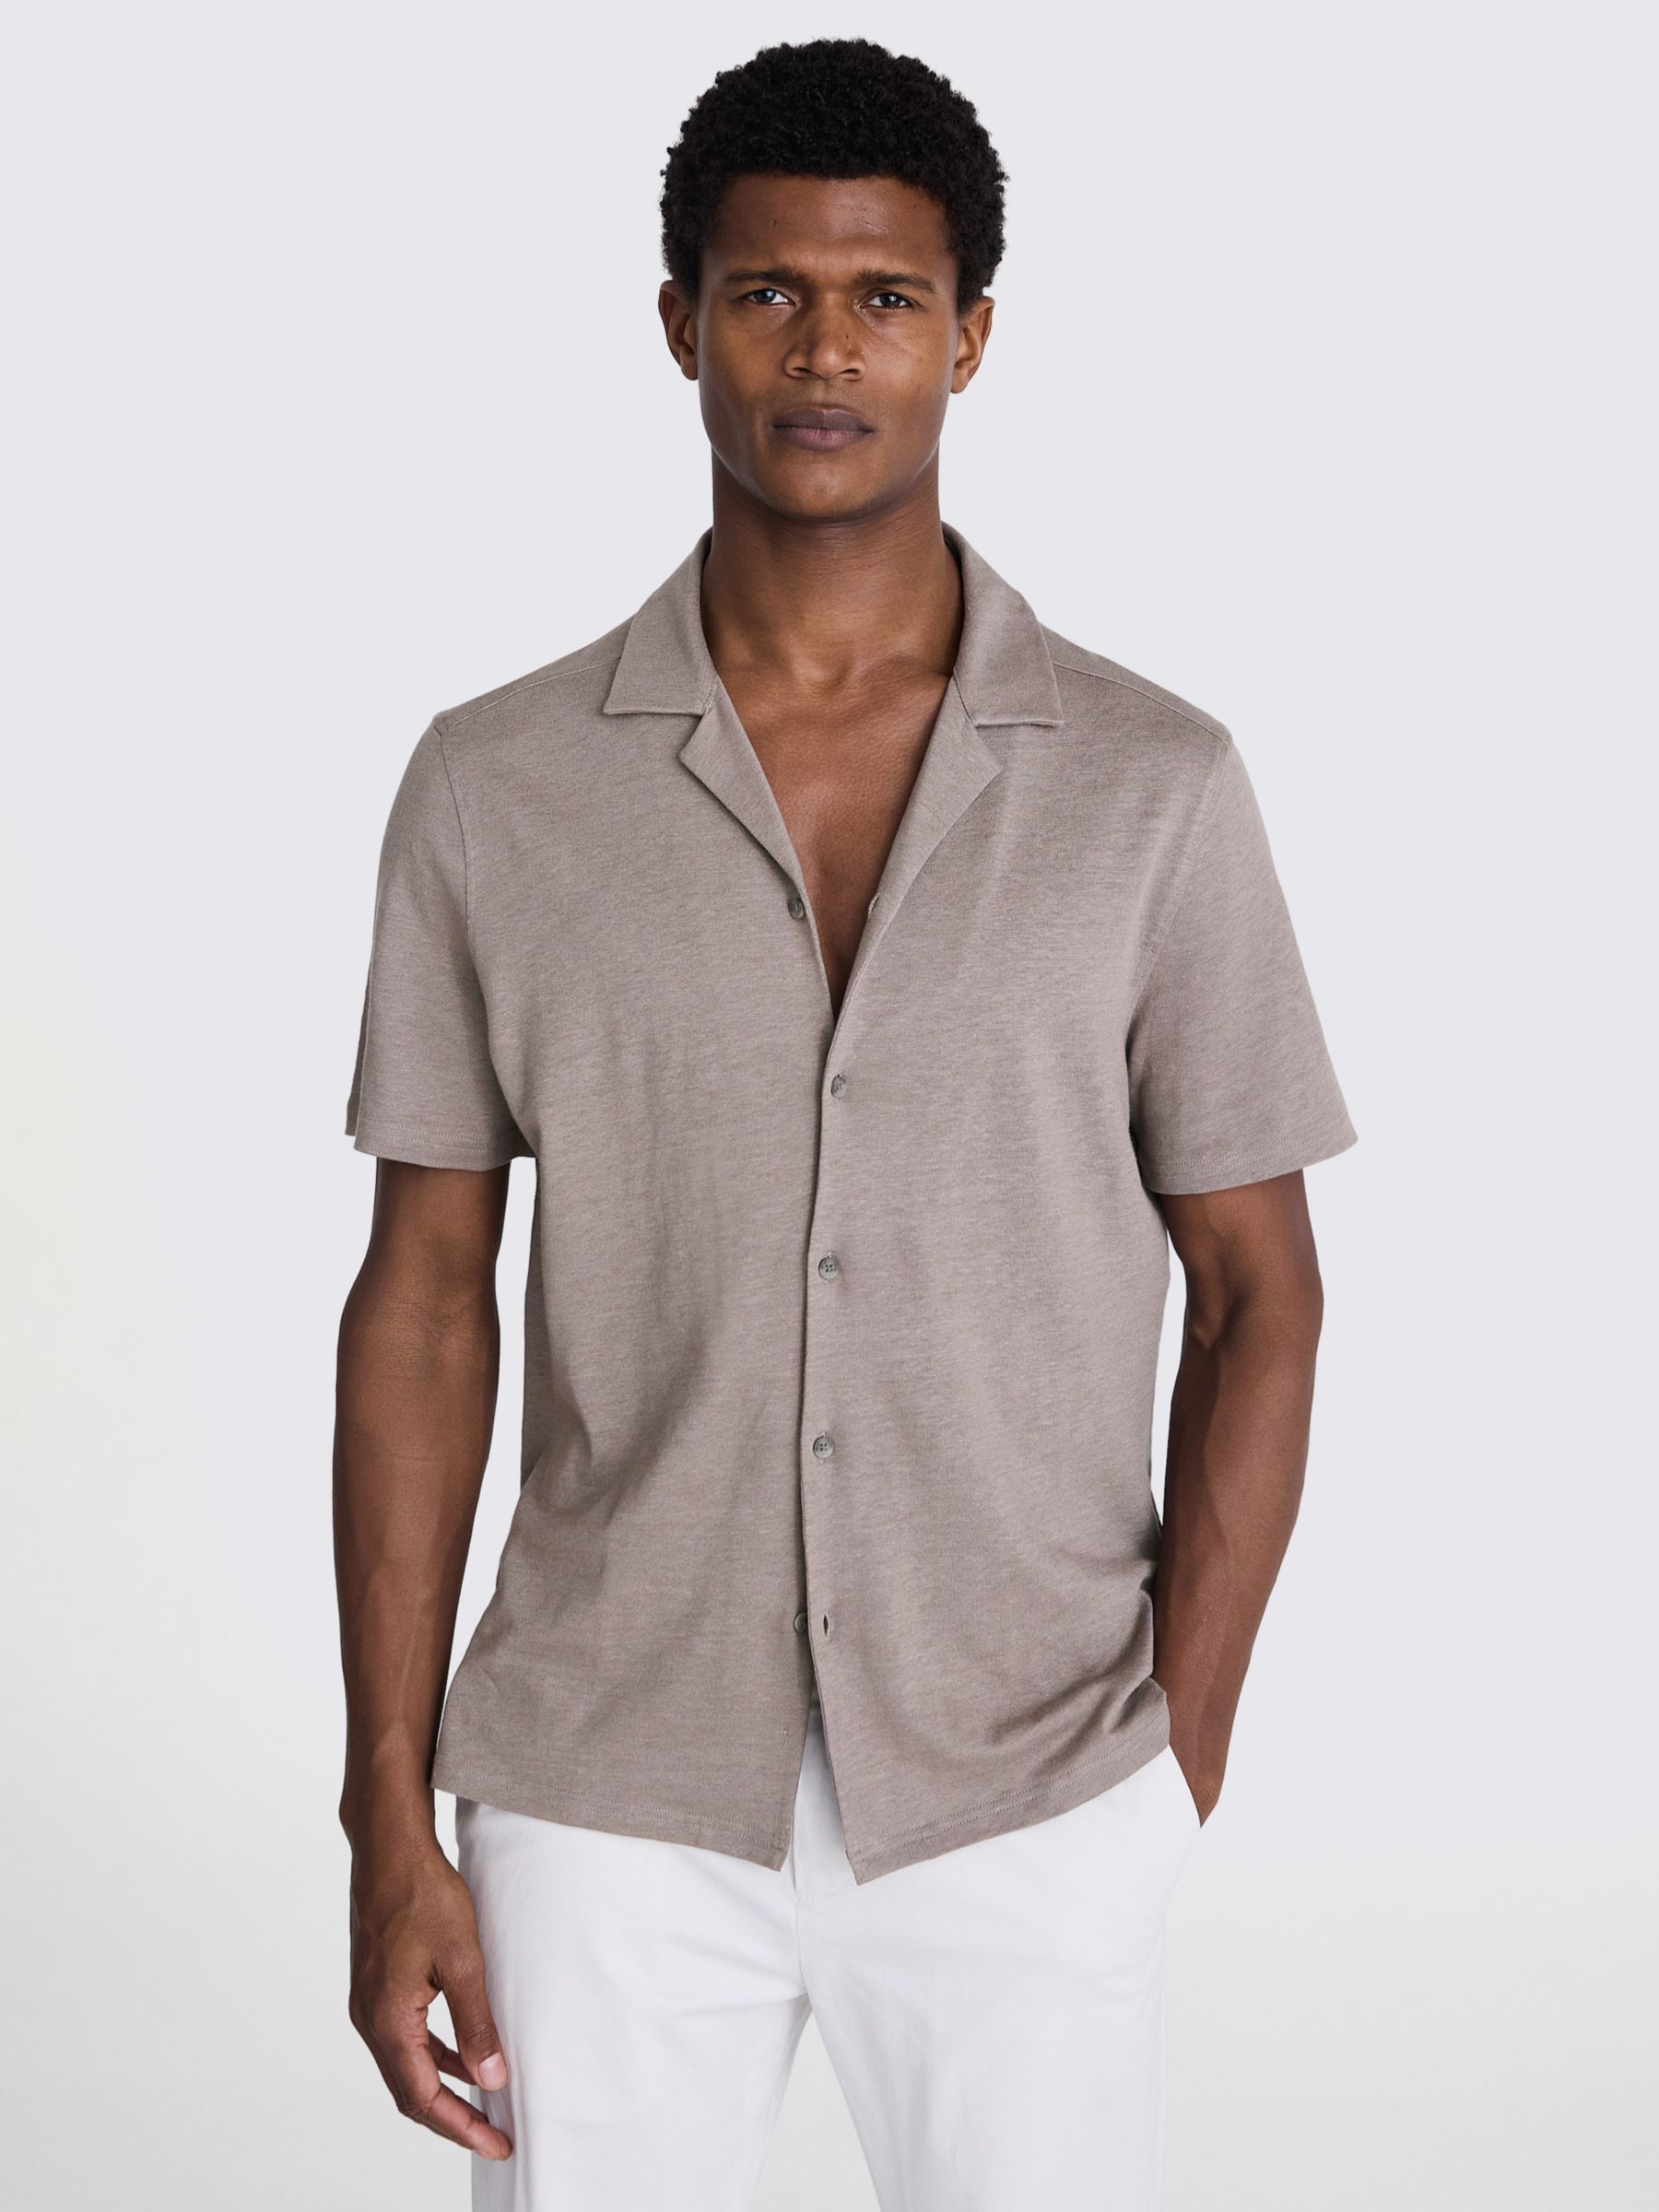 Moss Linen Blend Knitted Cuban Collar Shirt, Beige, L